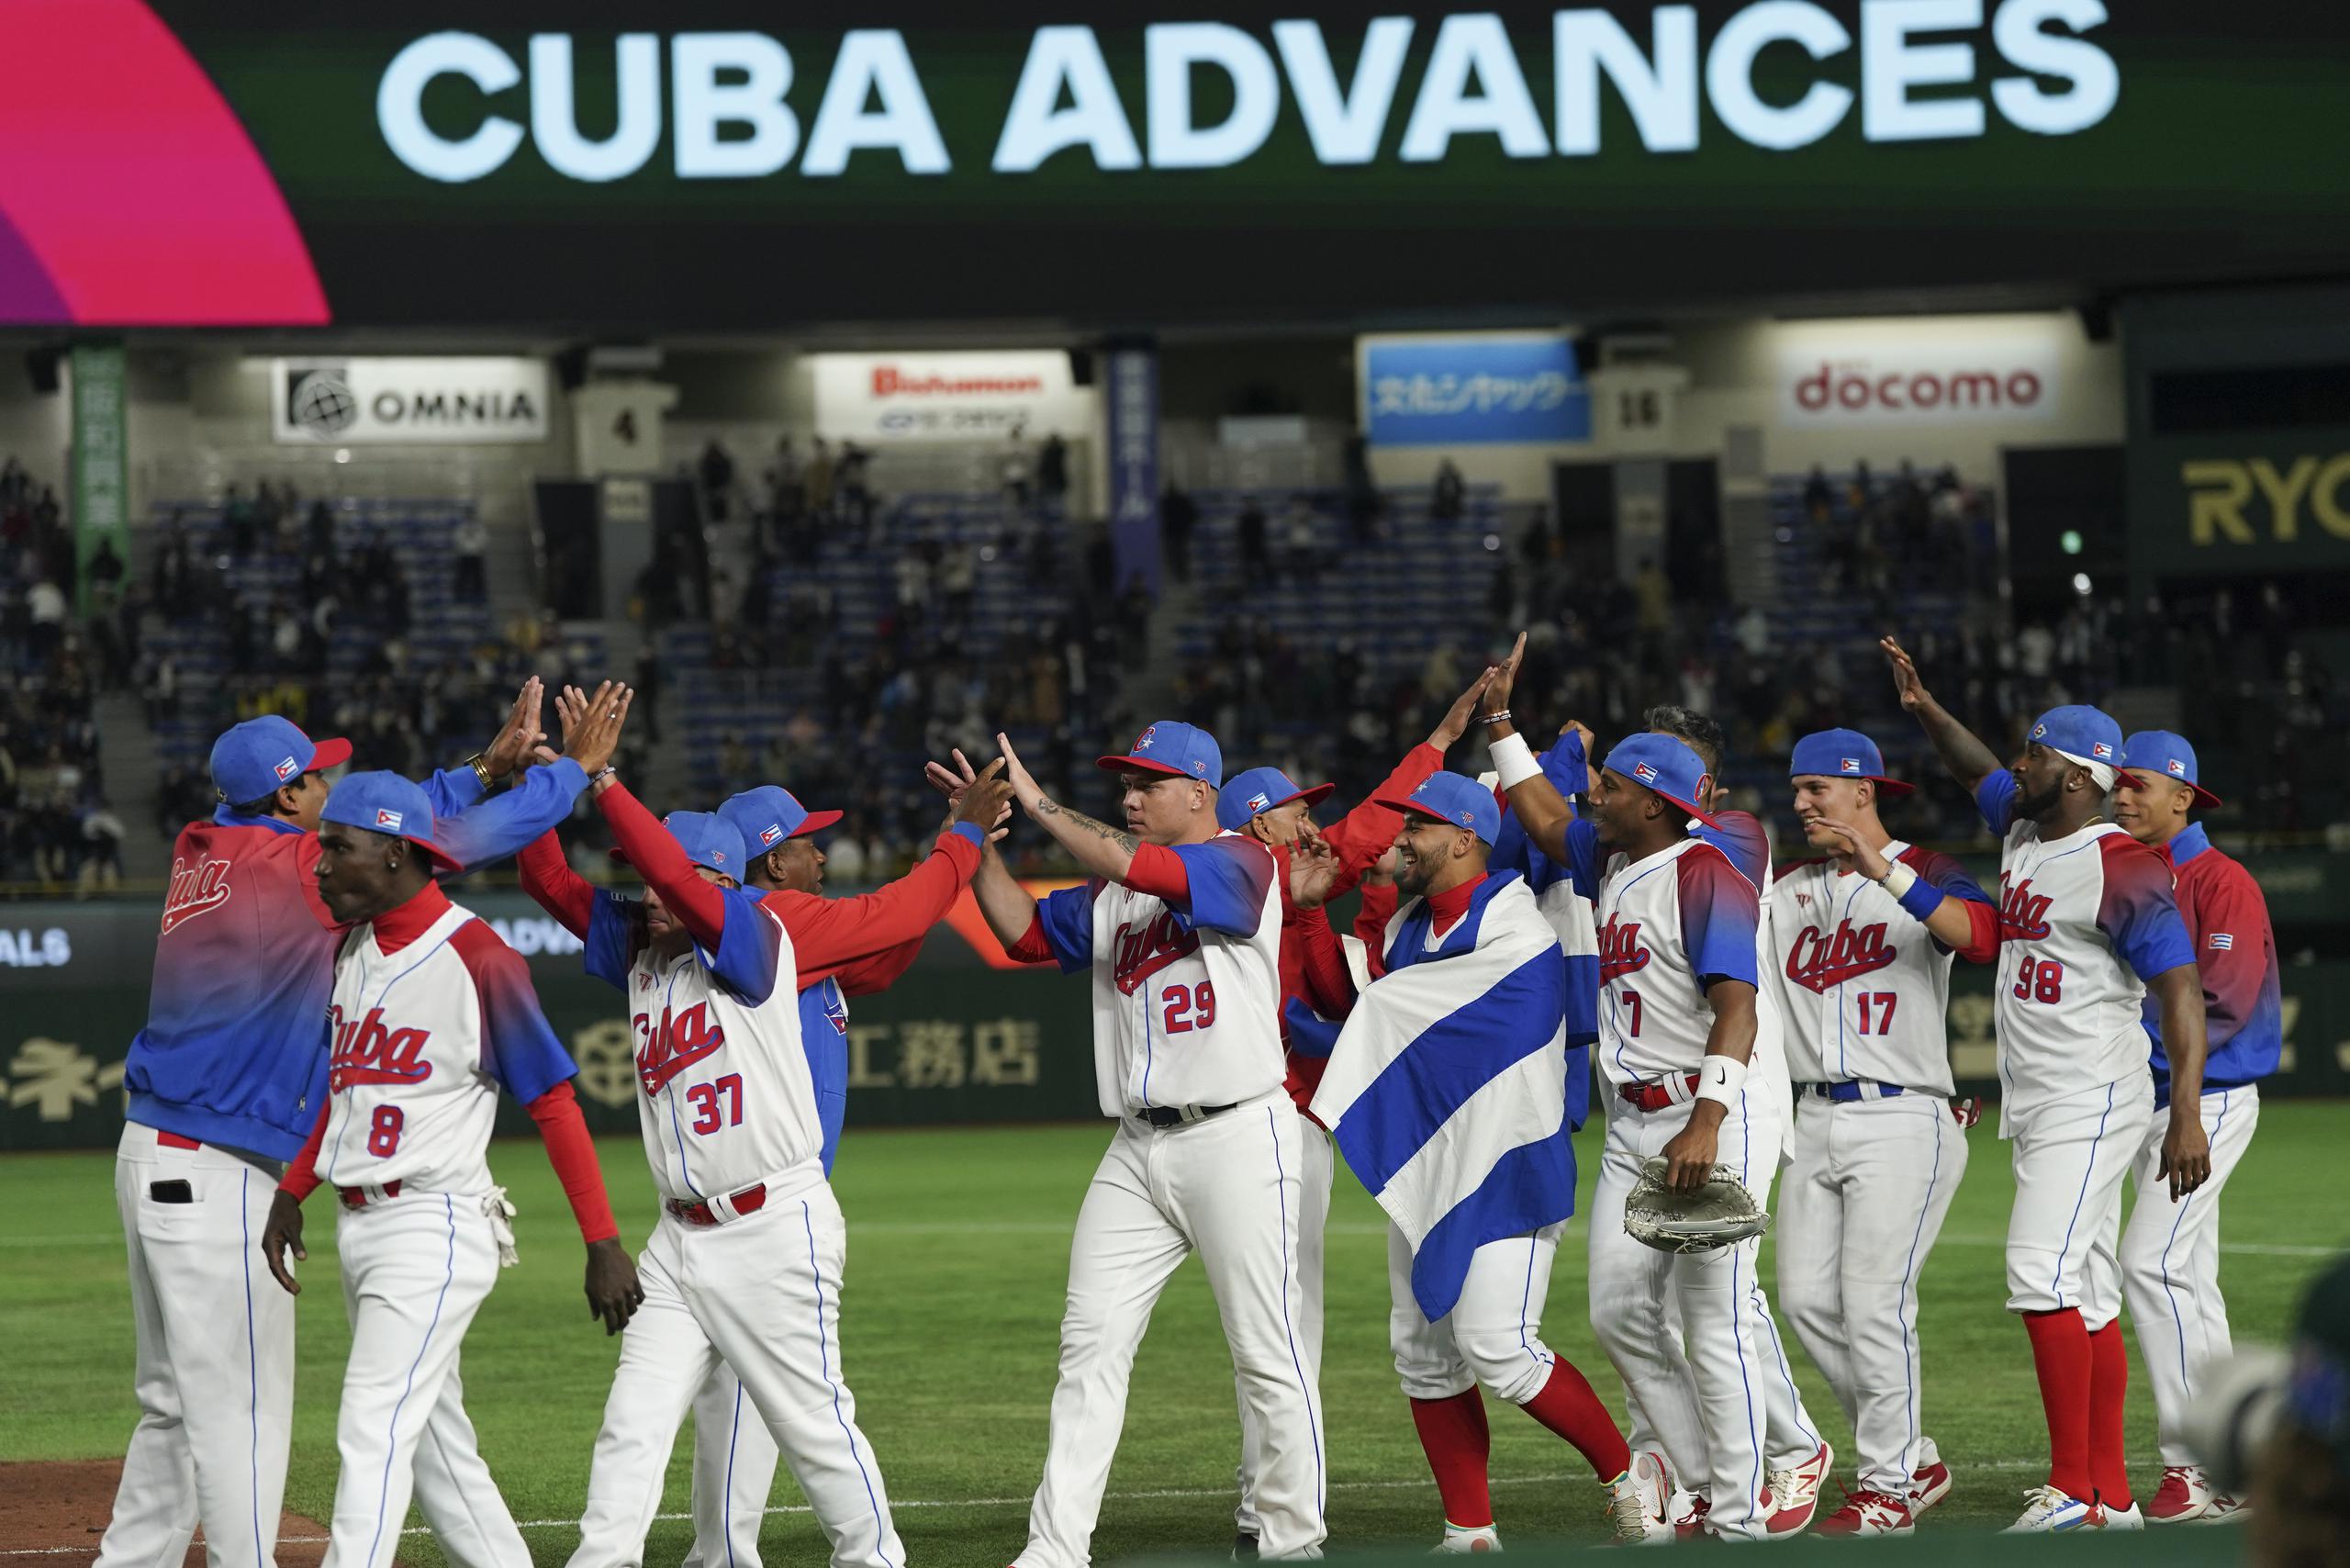 Cuba jugará este año en su segunda fase semifinal del Clásico Mundial de Béisbol en la historia del torneo. Fue subcampeón del mundo en la primera edición del campeonato en el 2006.